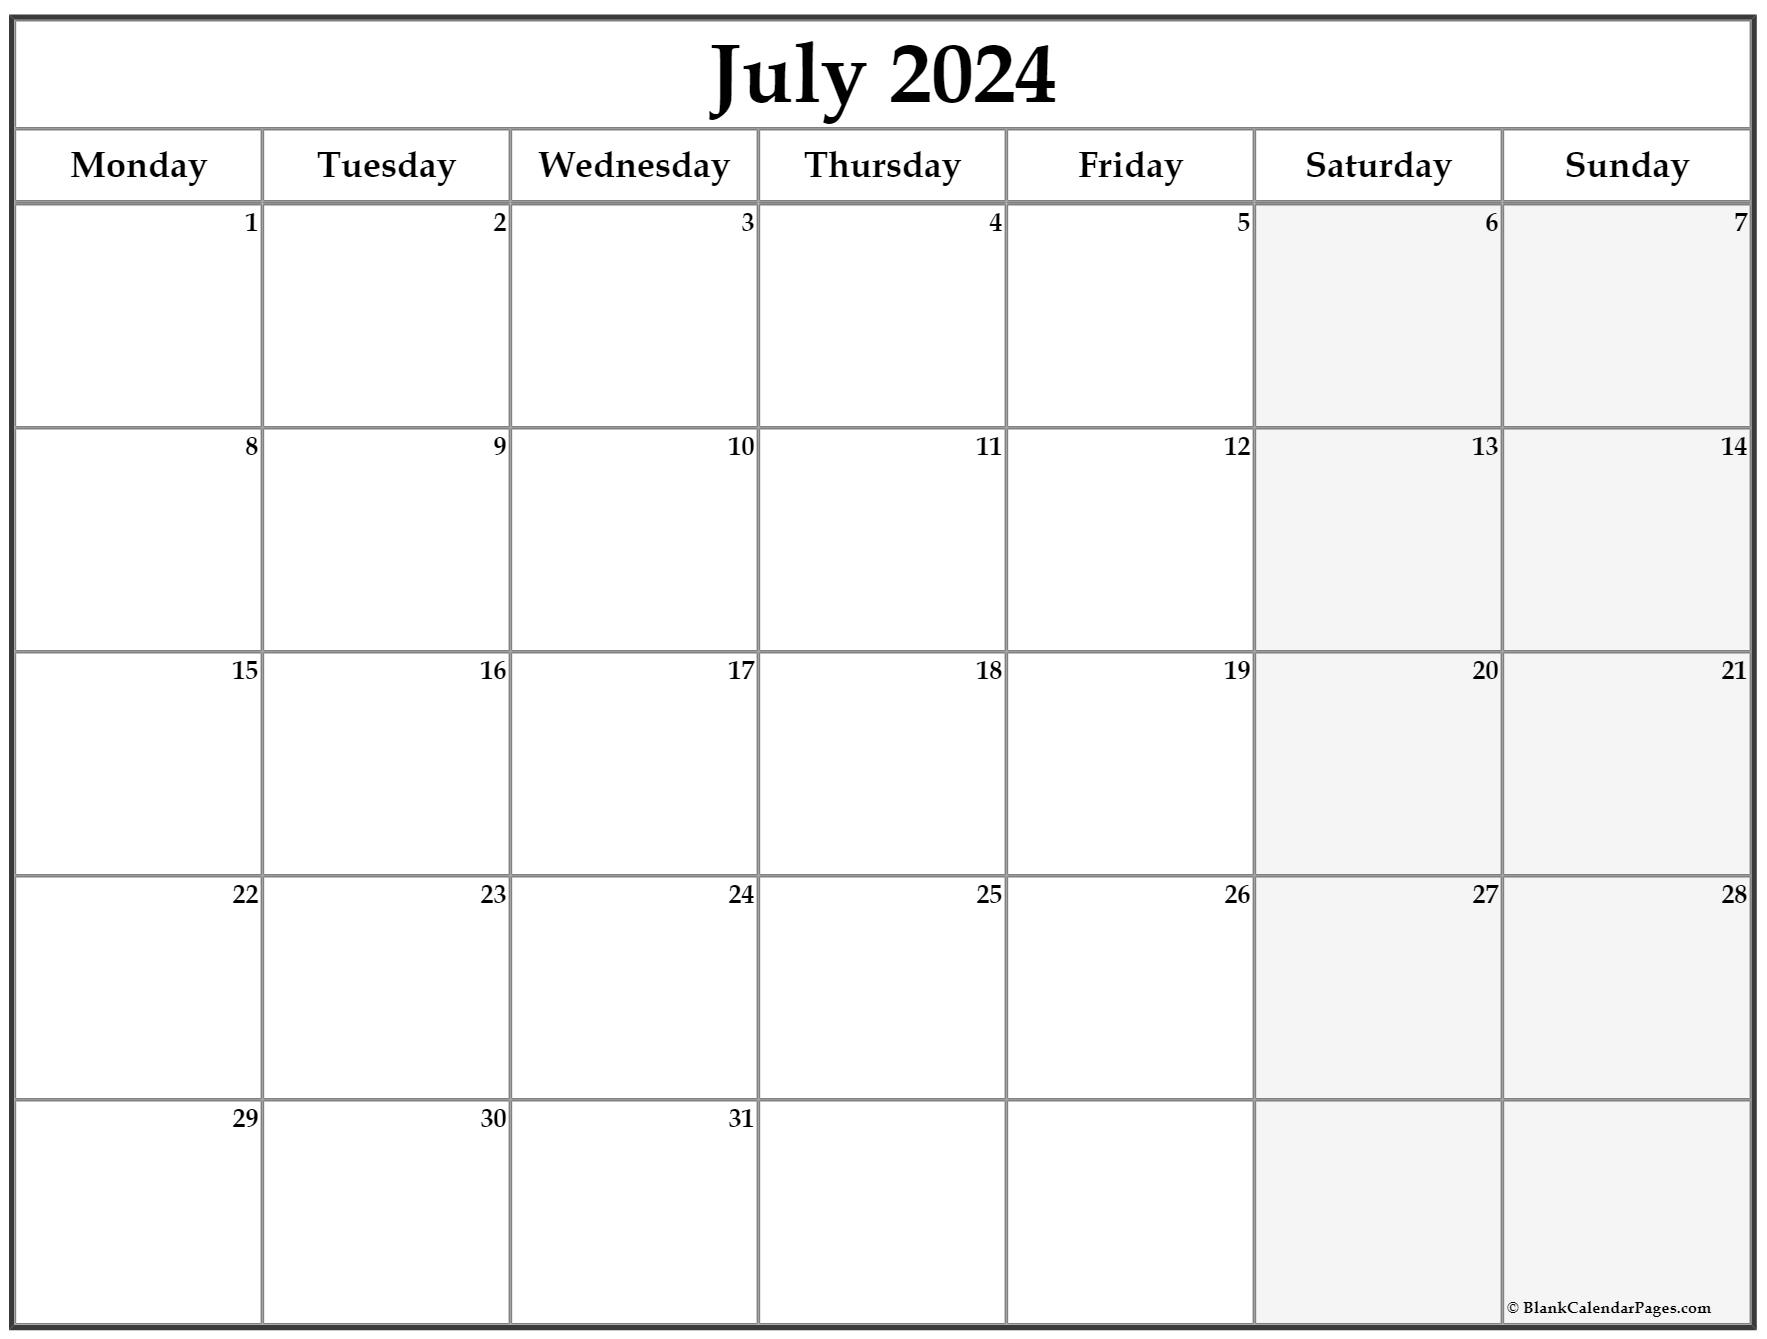 Календарь август 2021